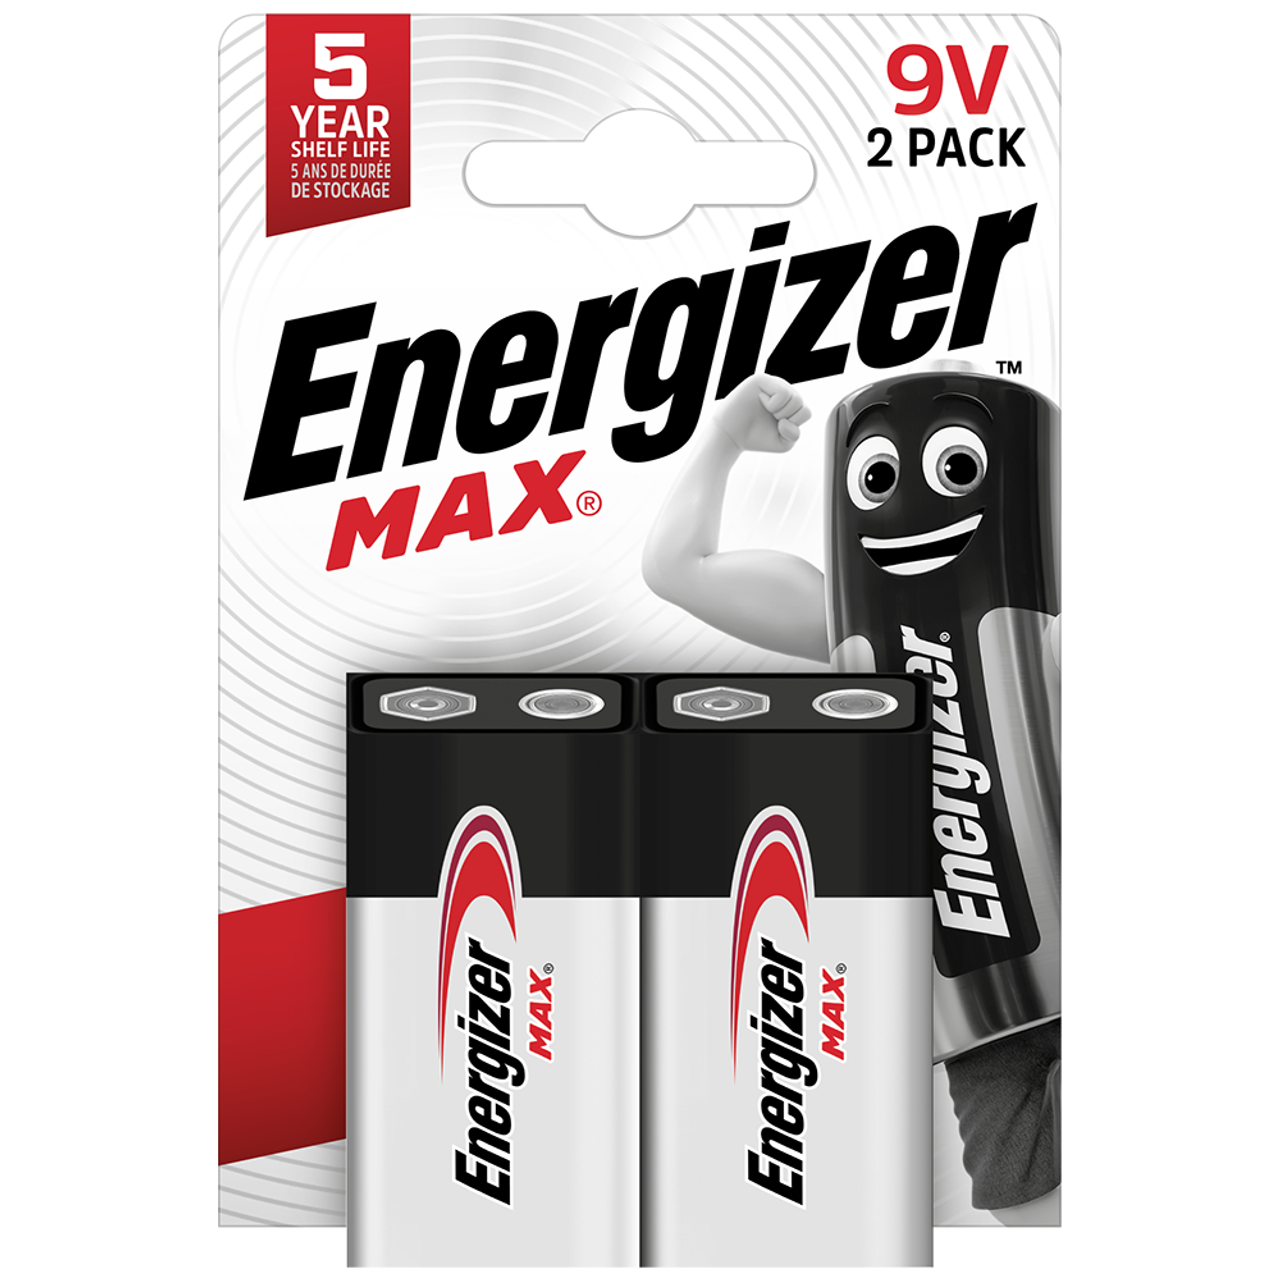 Energizer Max 9V PP3 6LR61 Alkaline Battery